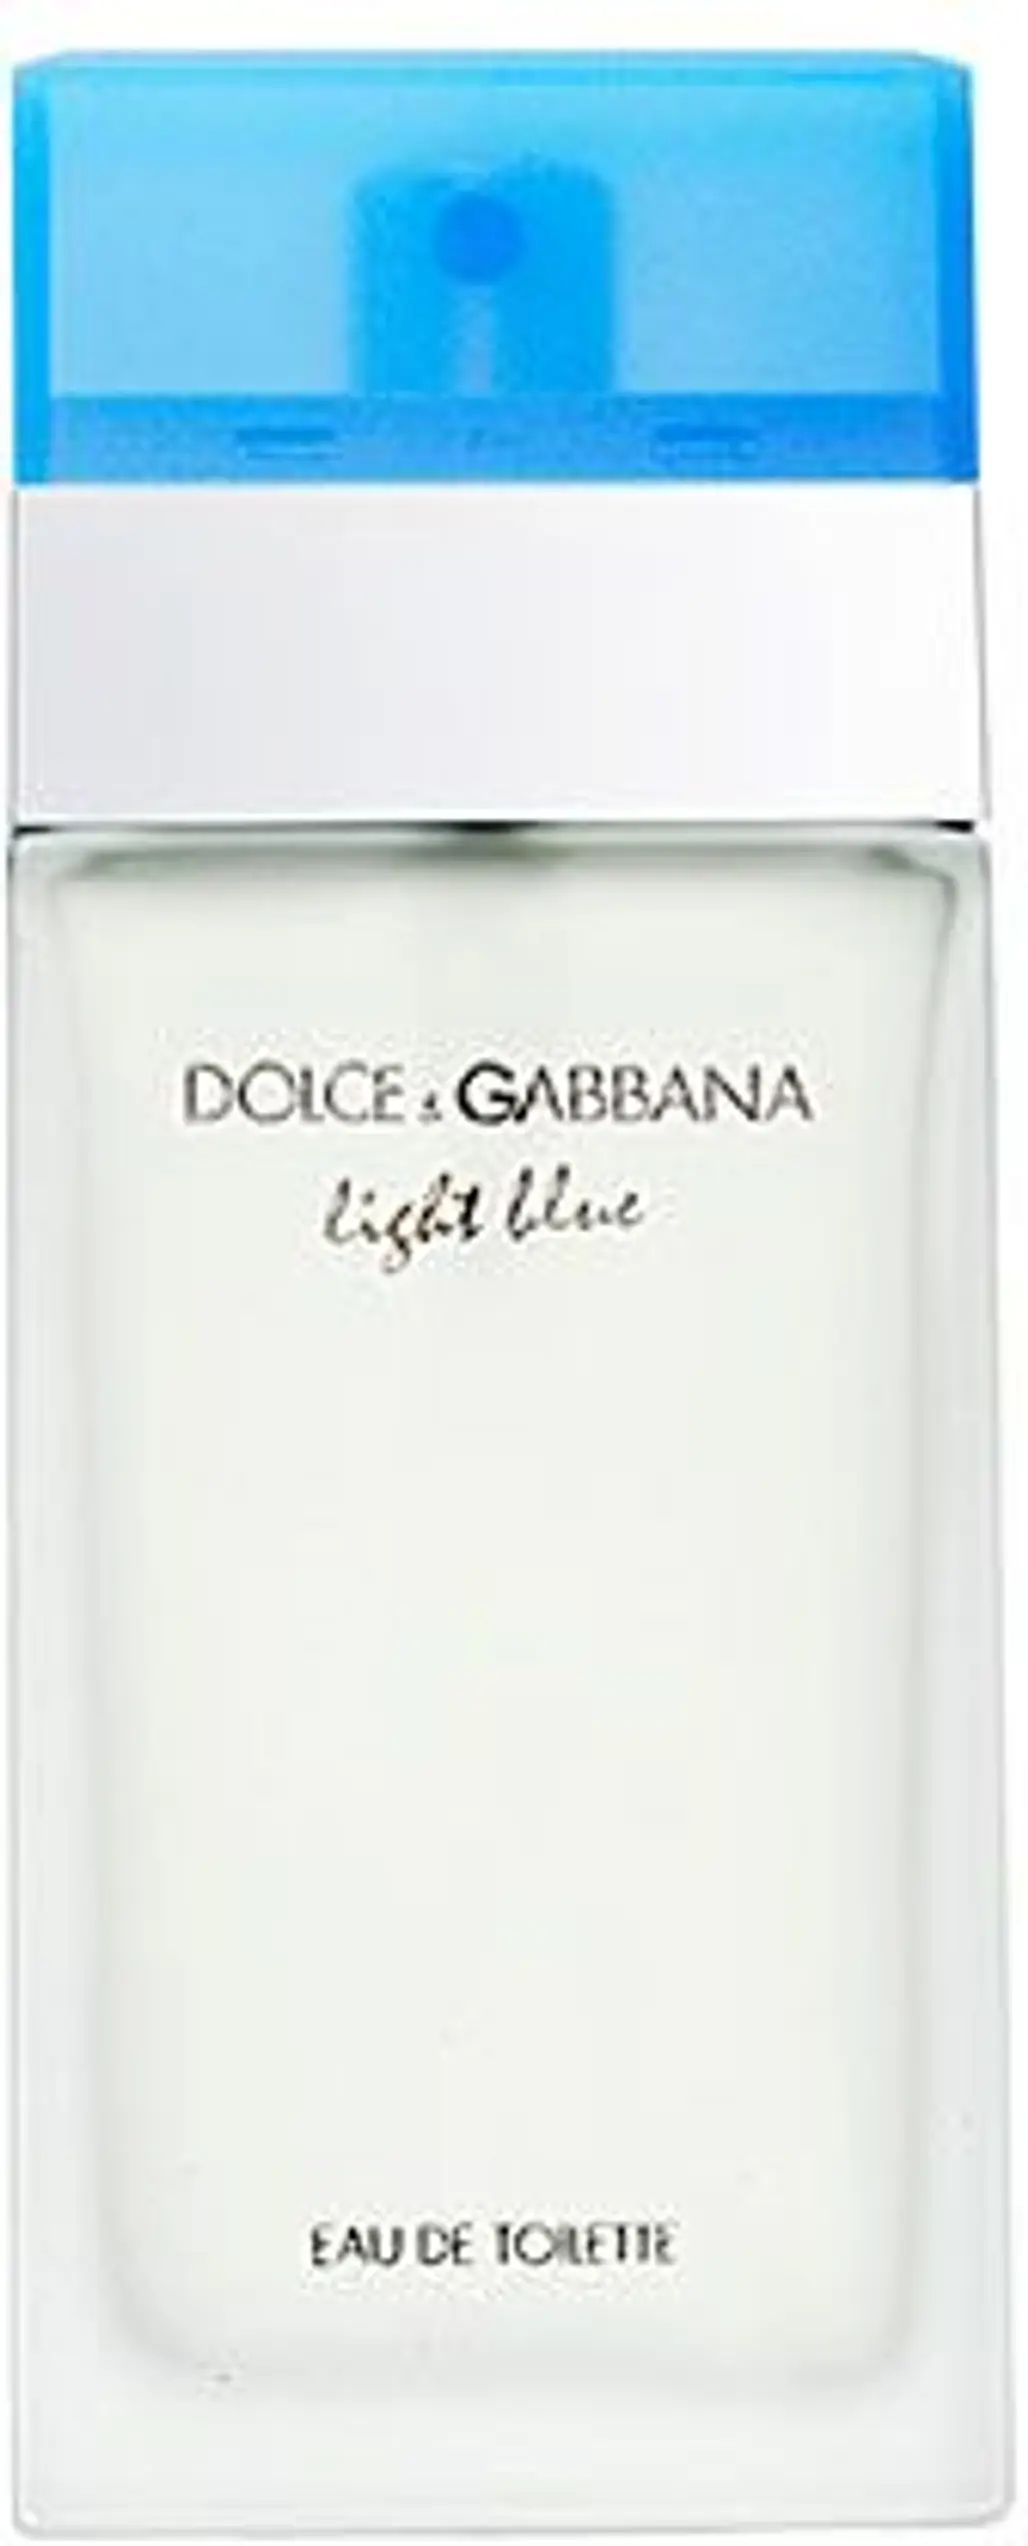 Light Blue by Dolce & Gabbana